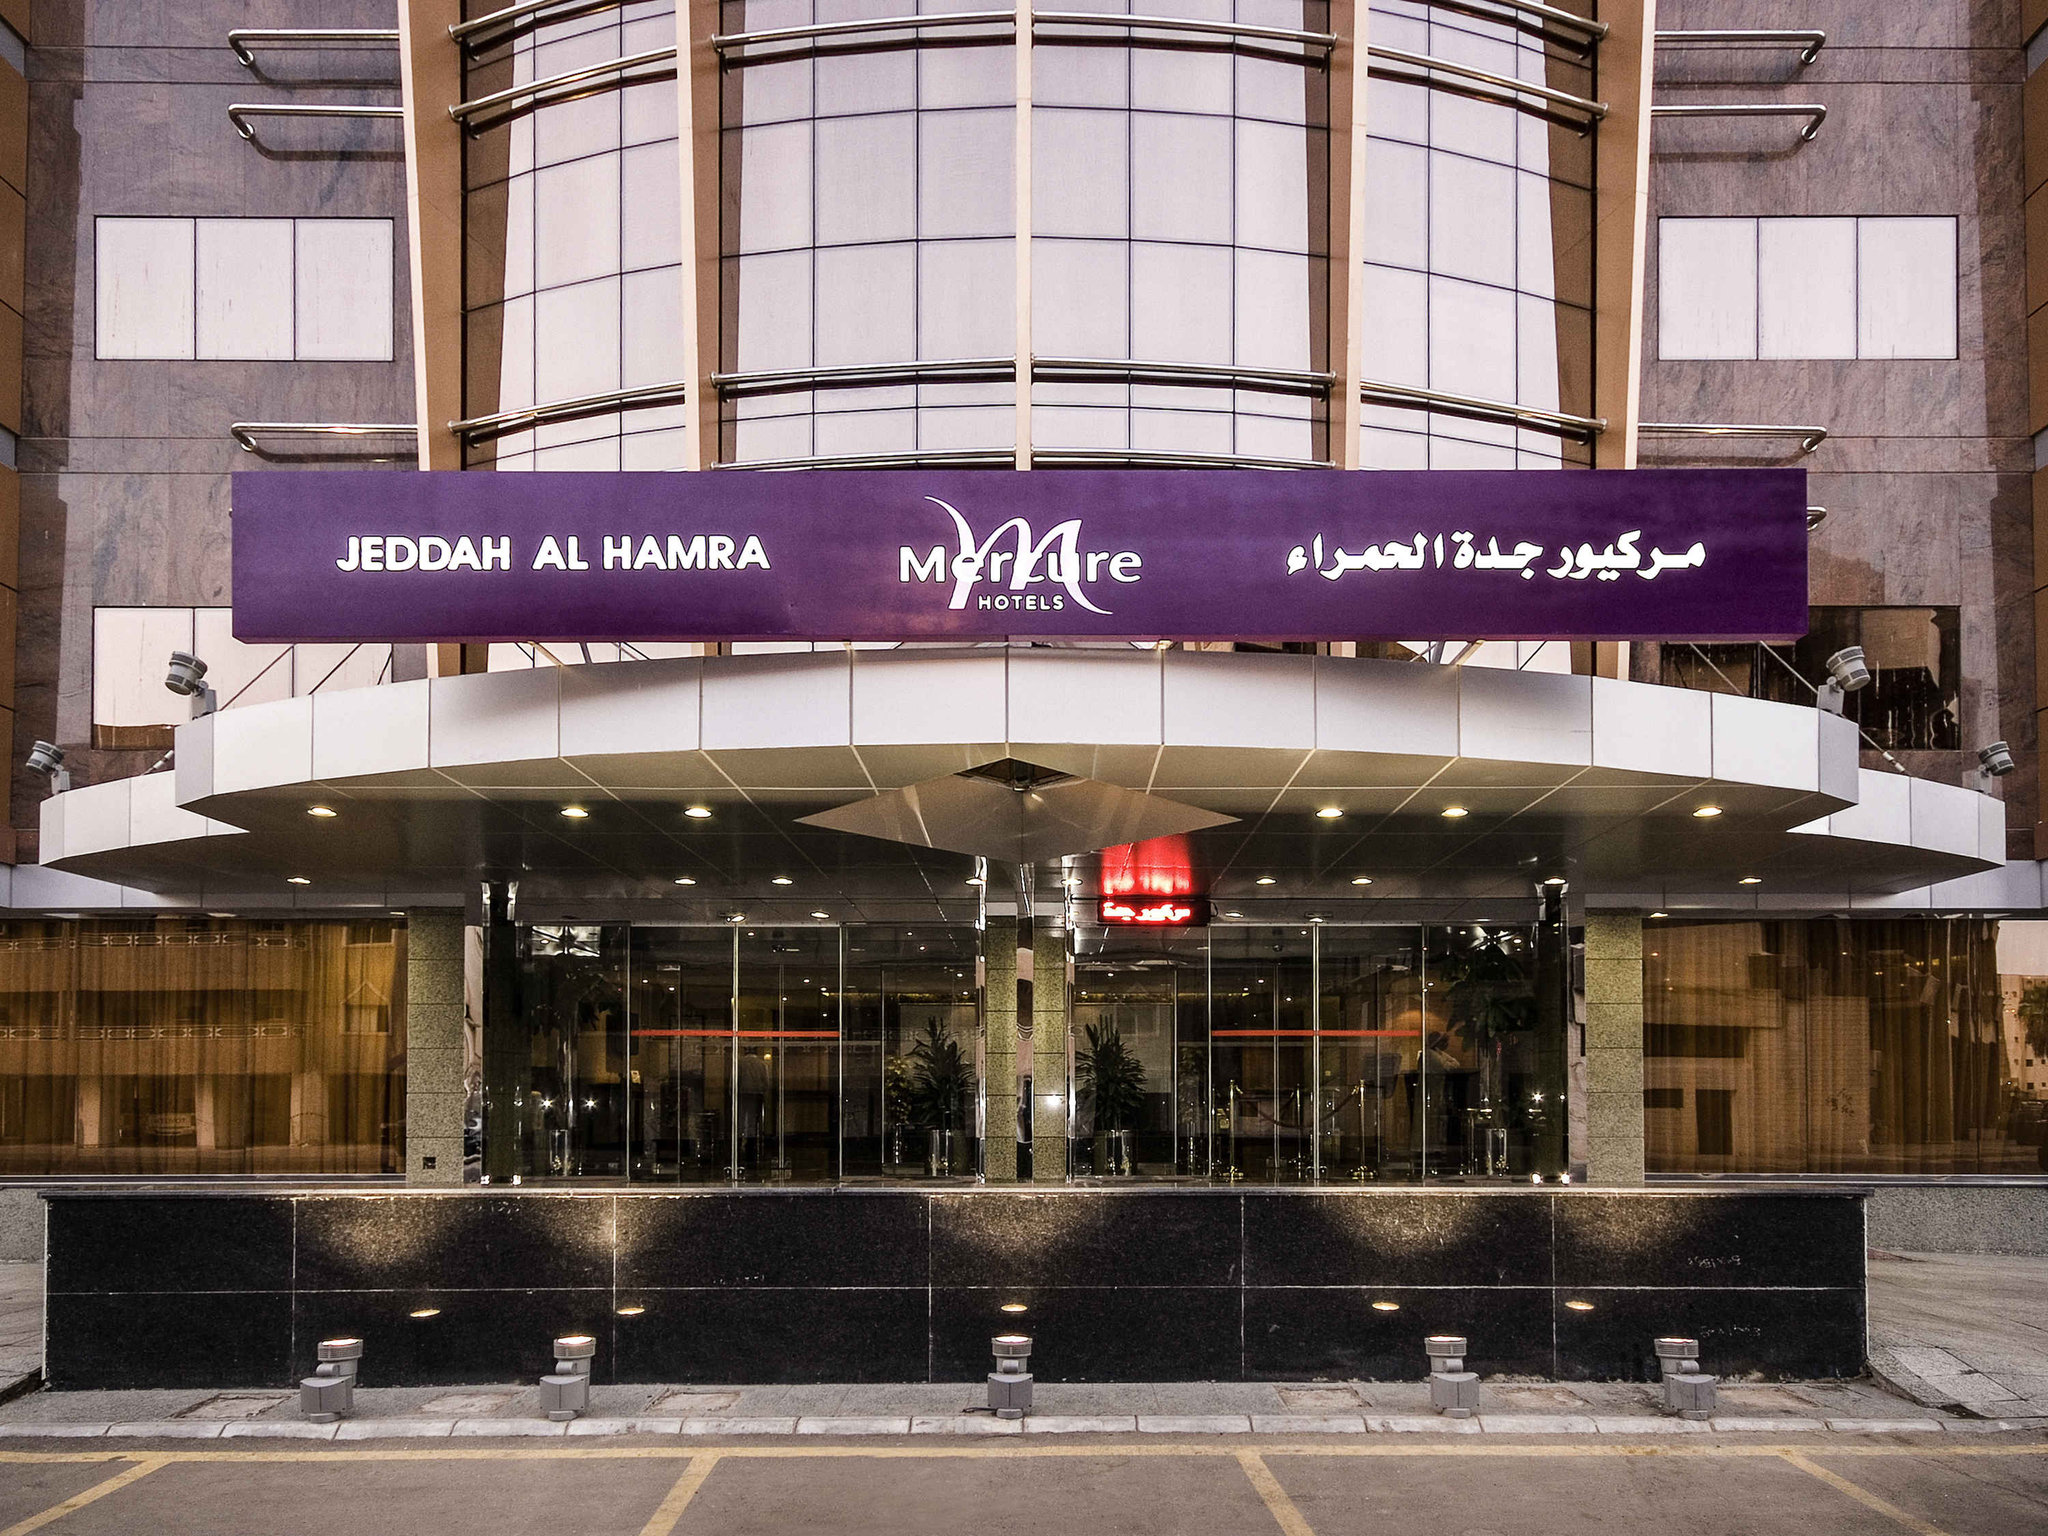 Mercure Jeddah Al Hamra - Al Hamra Hotel Jeddah , HD Wallpaper & Backgrounds